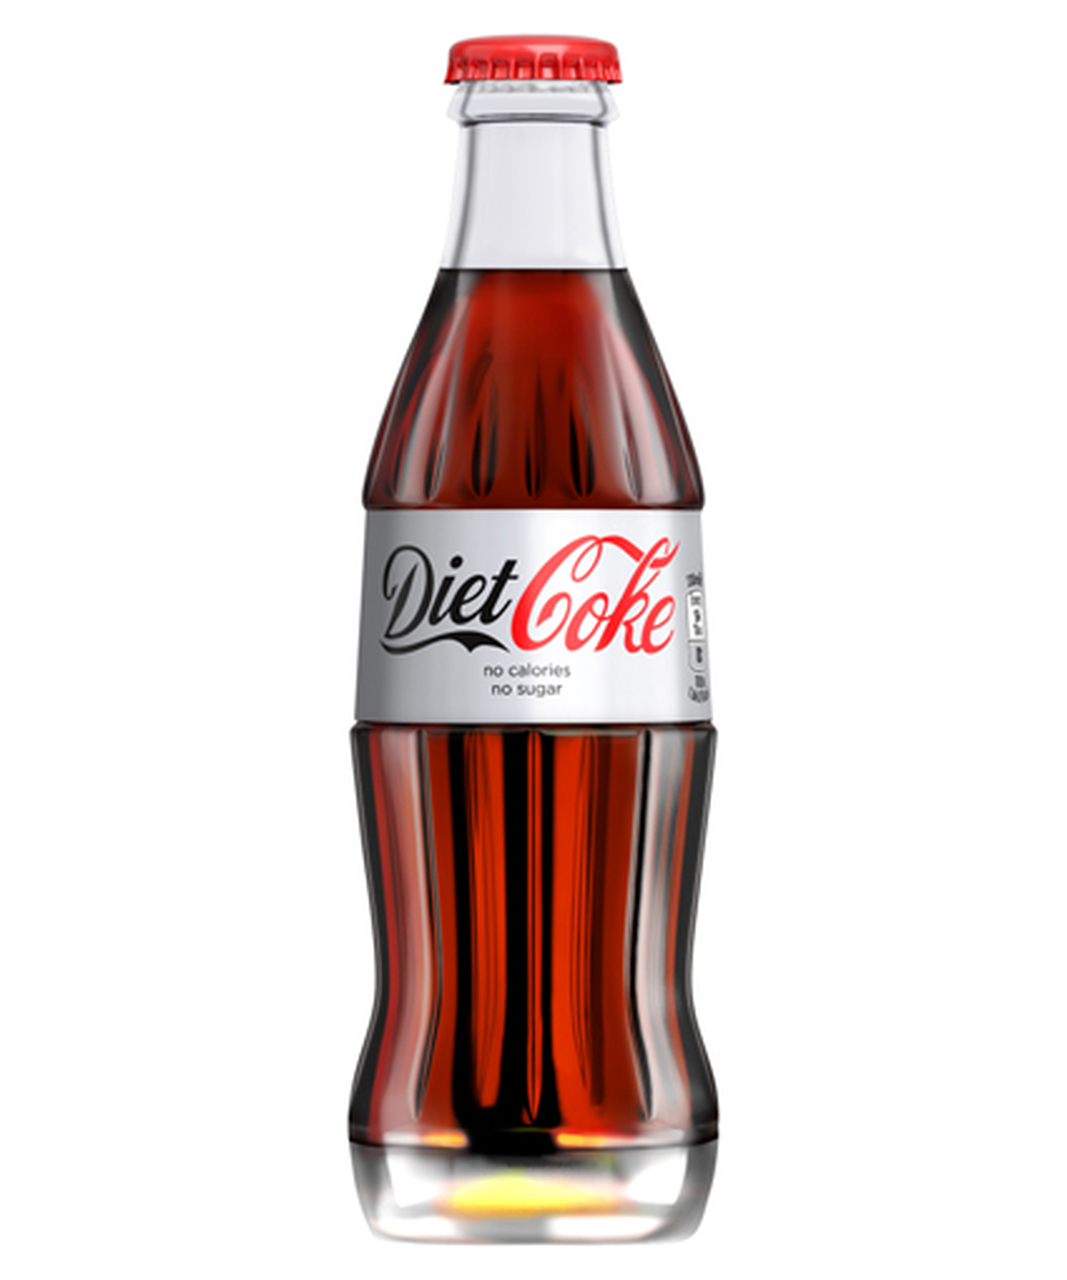 Diet Coke Glass bottle